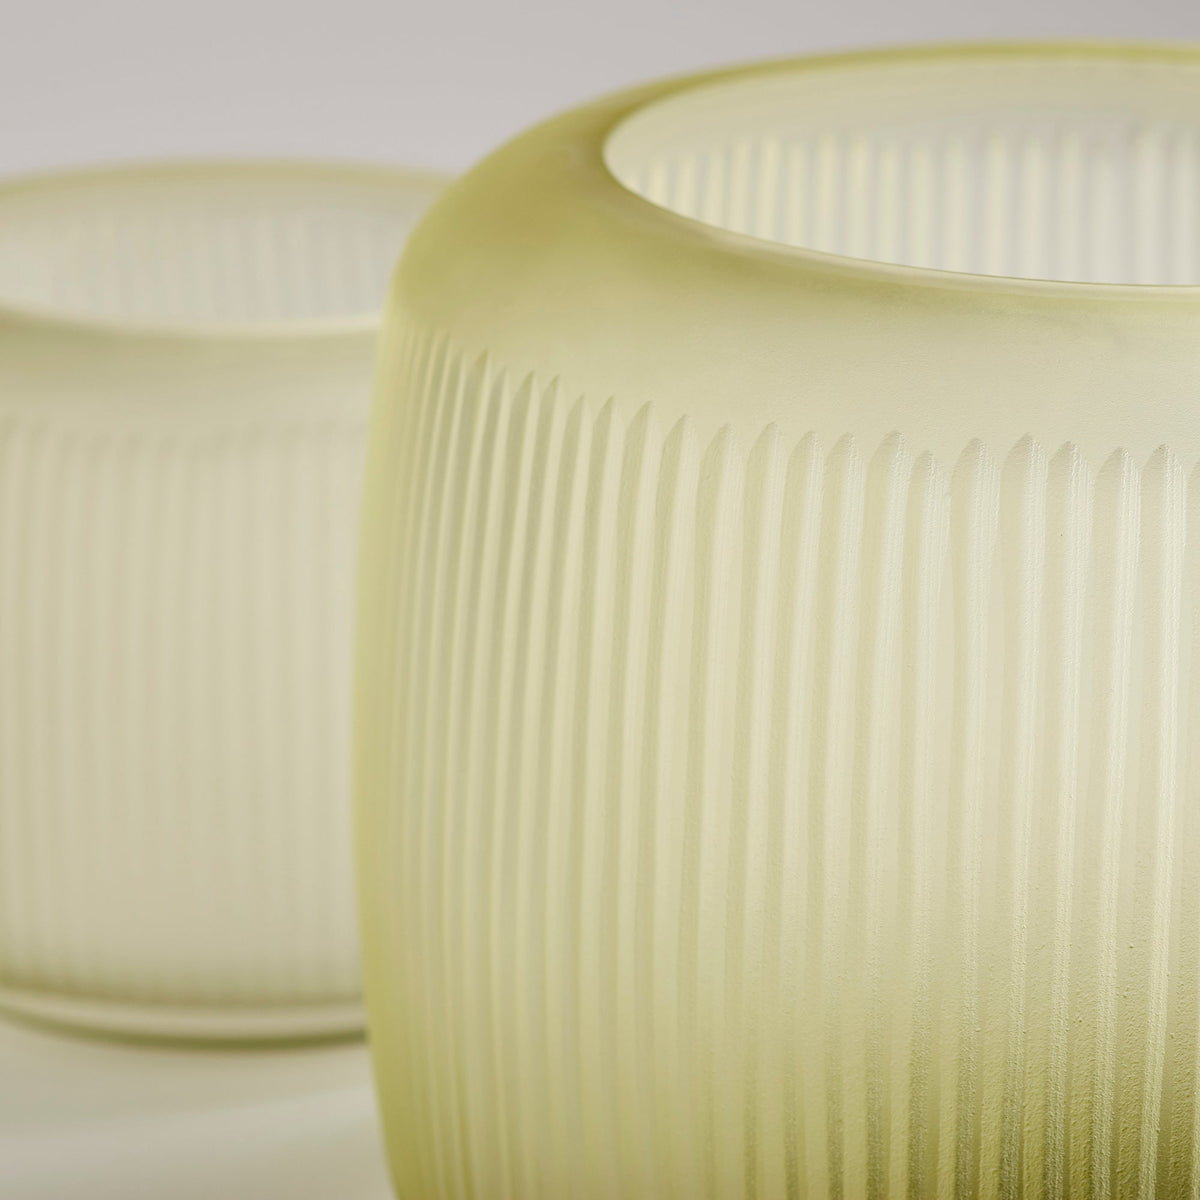 Sorrel Vase|Green-Medium by Cyan